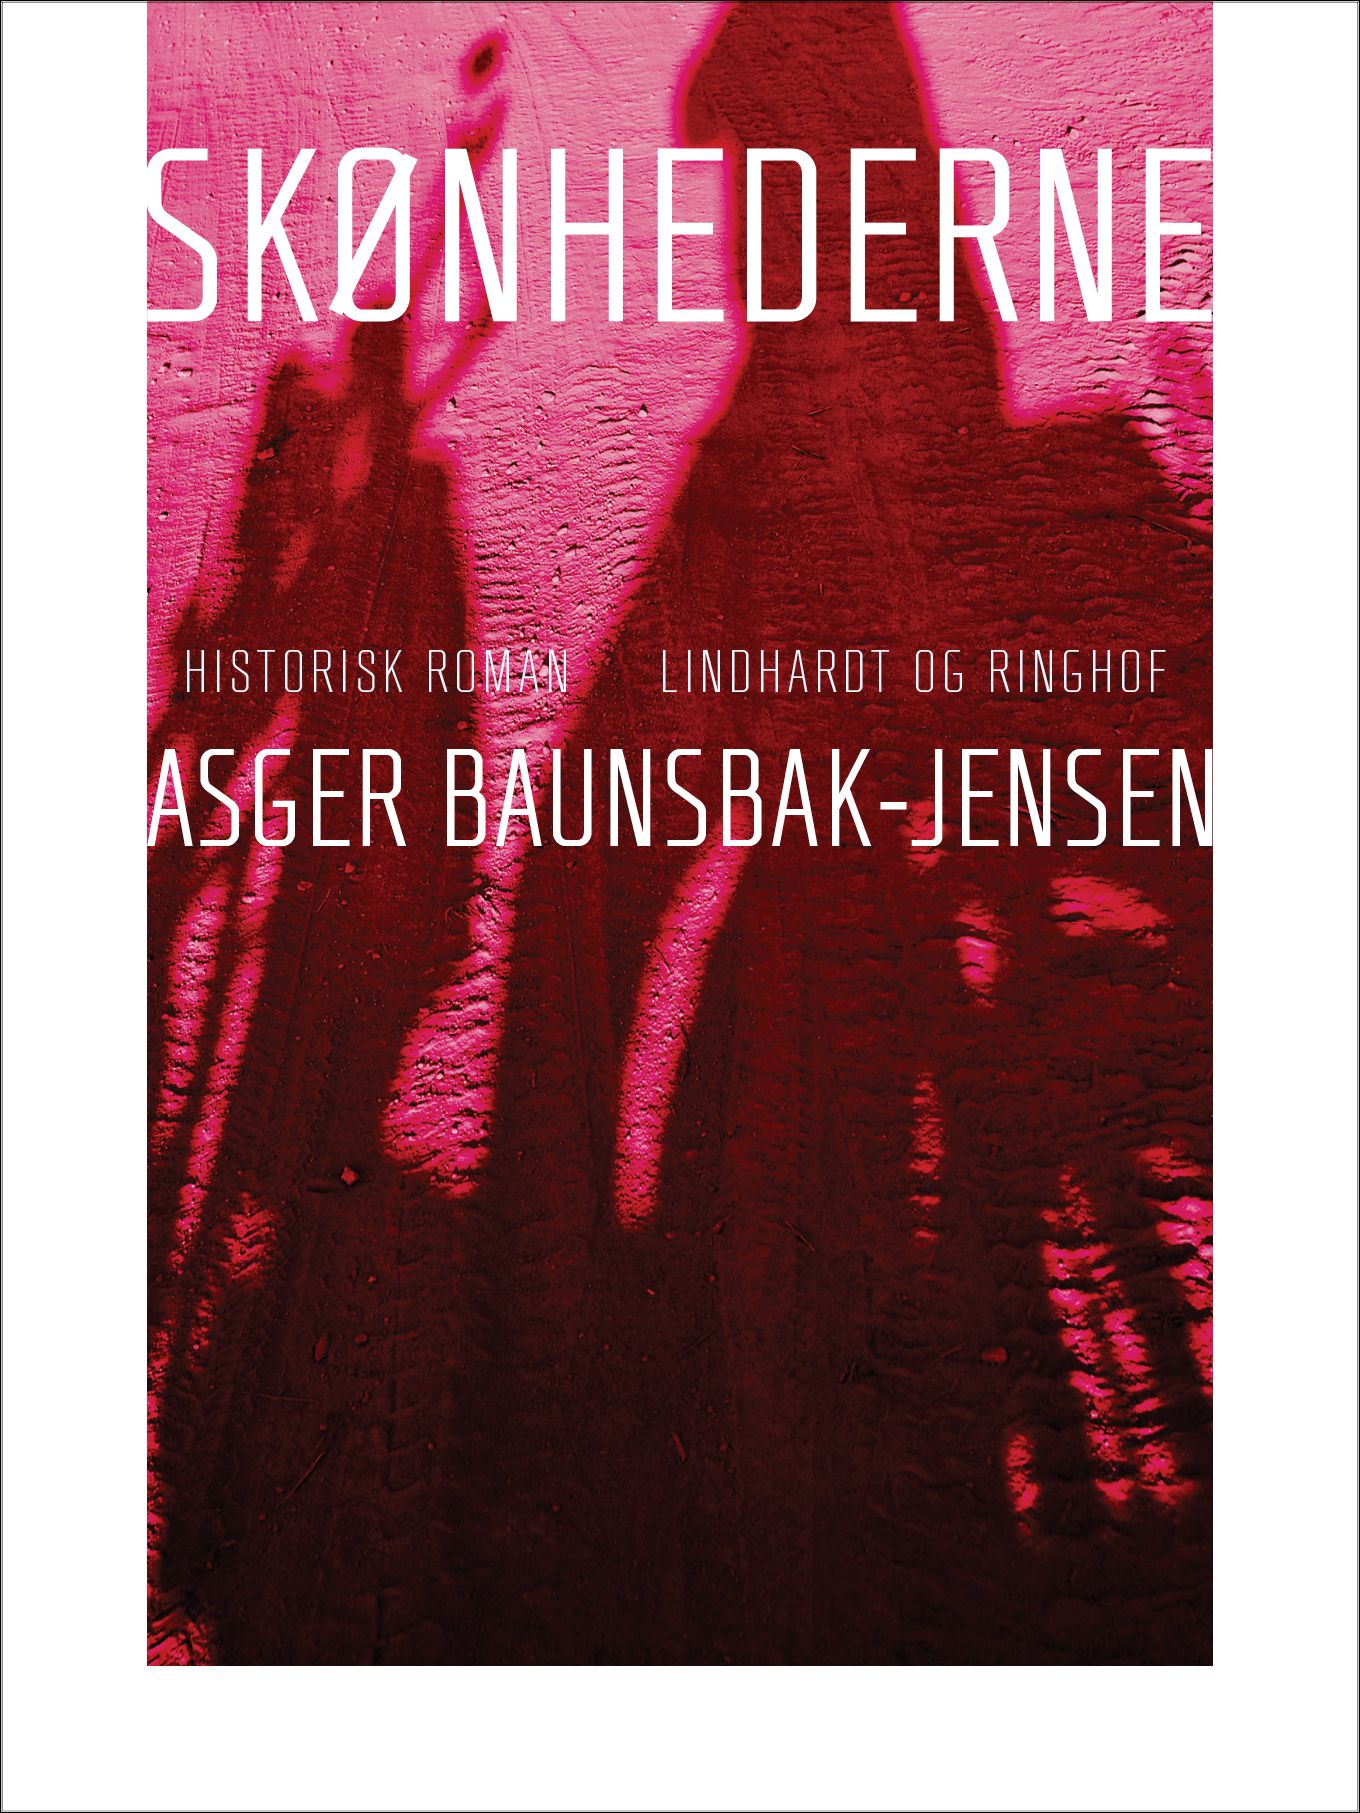 Skønhederne, e-bog af Asger Baunsbak-Jensen